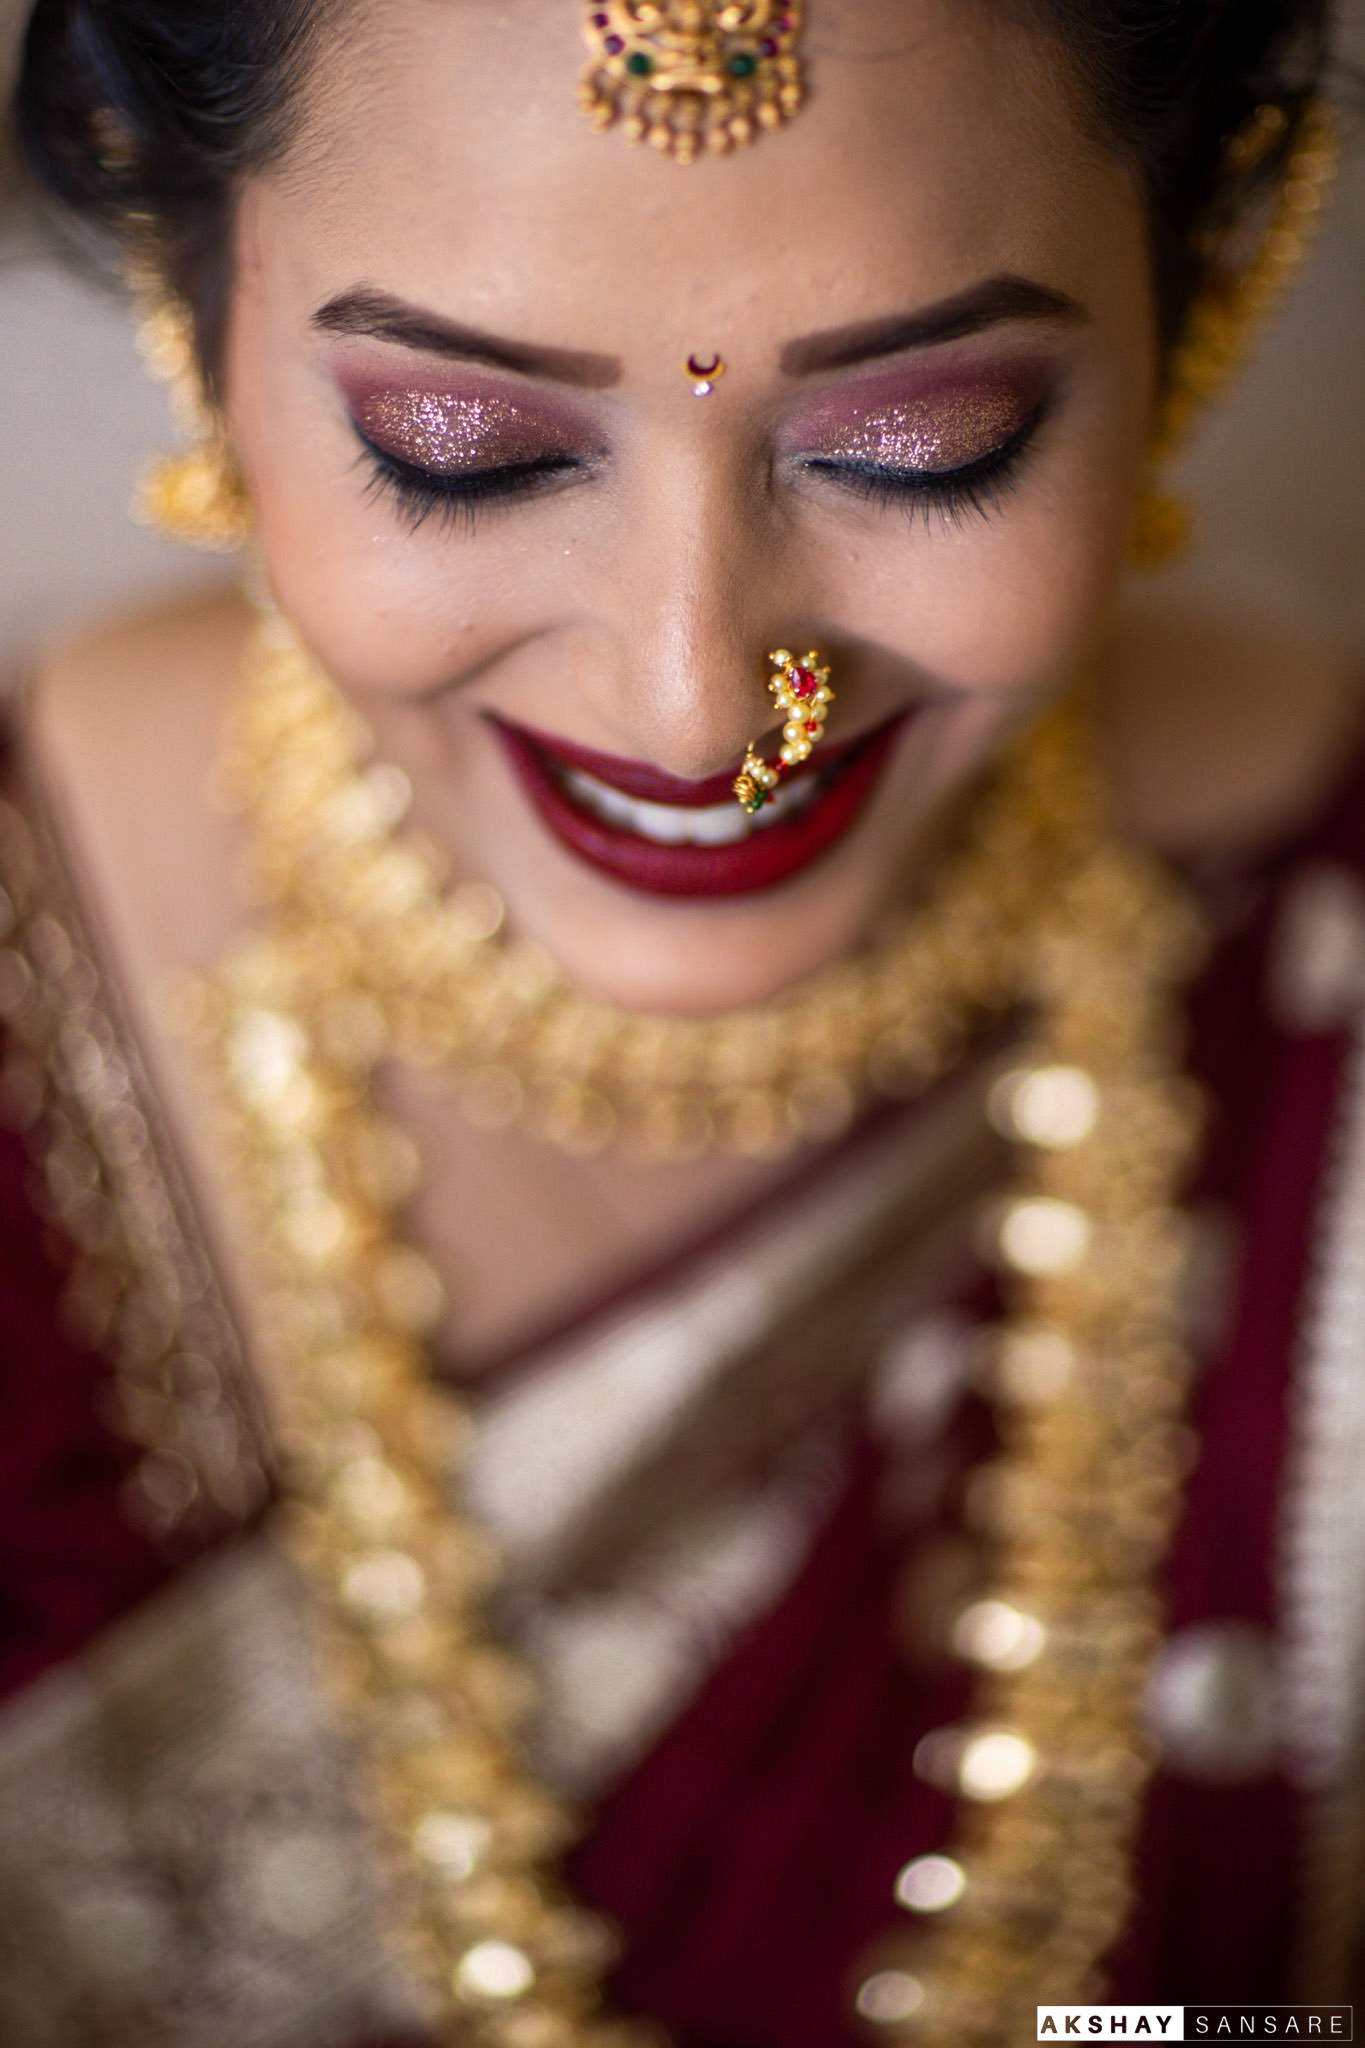 Priyanka x Ravi compress | Akshay Sansare Photography -10.jpg